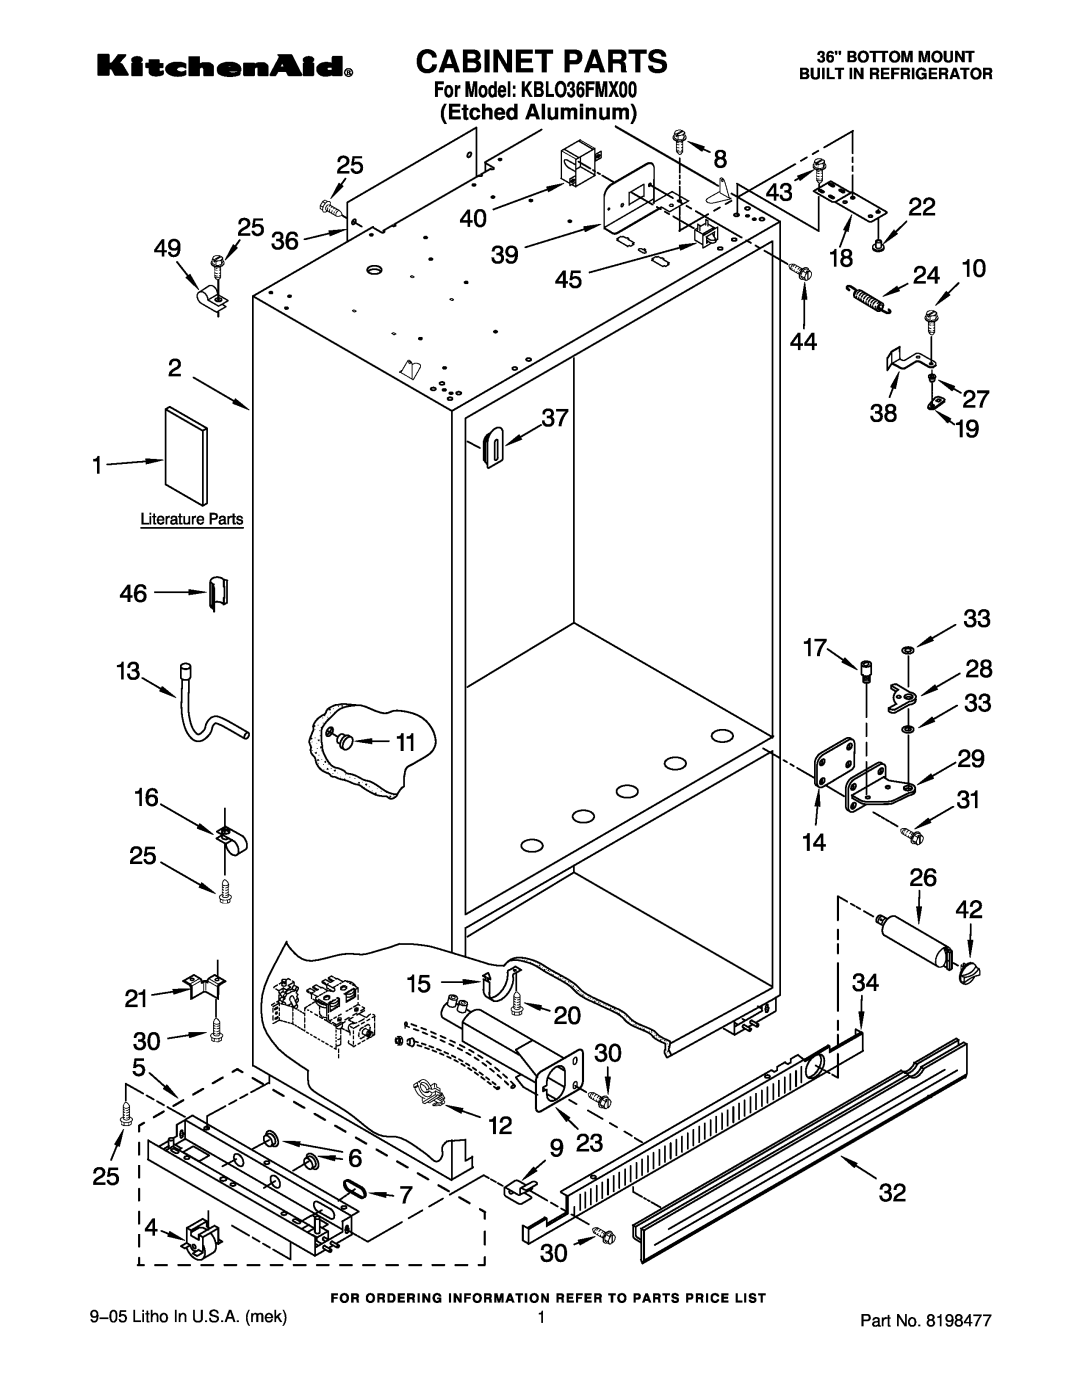 KitchenAid manual Cabinet Parts, 9−05 Litho In U.S.A. mek, For Model KBLO36FMX00 Etched Aluminum 